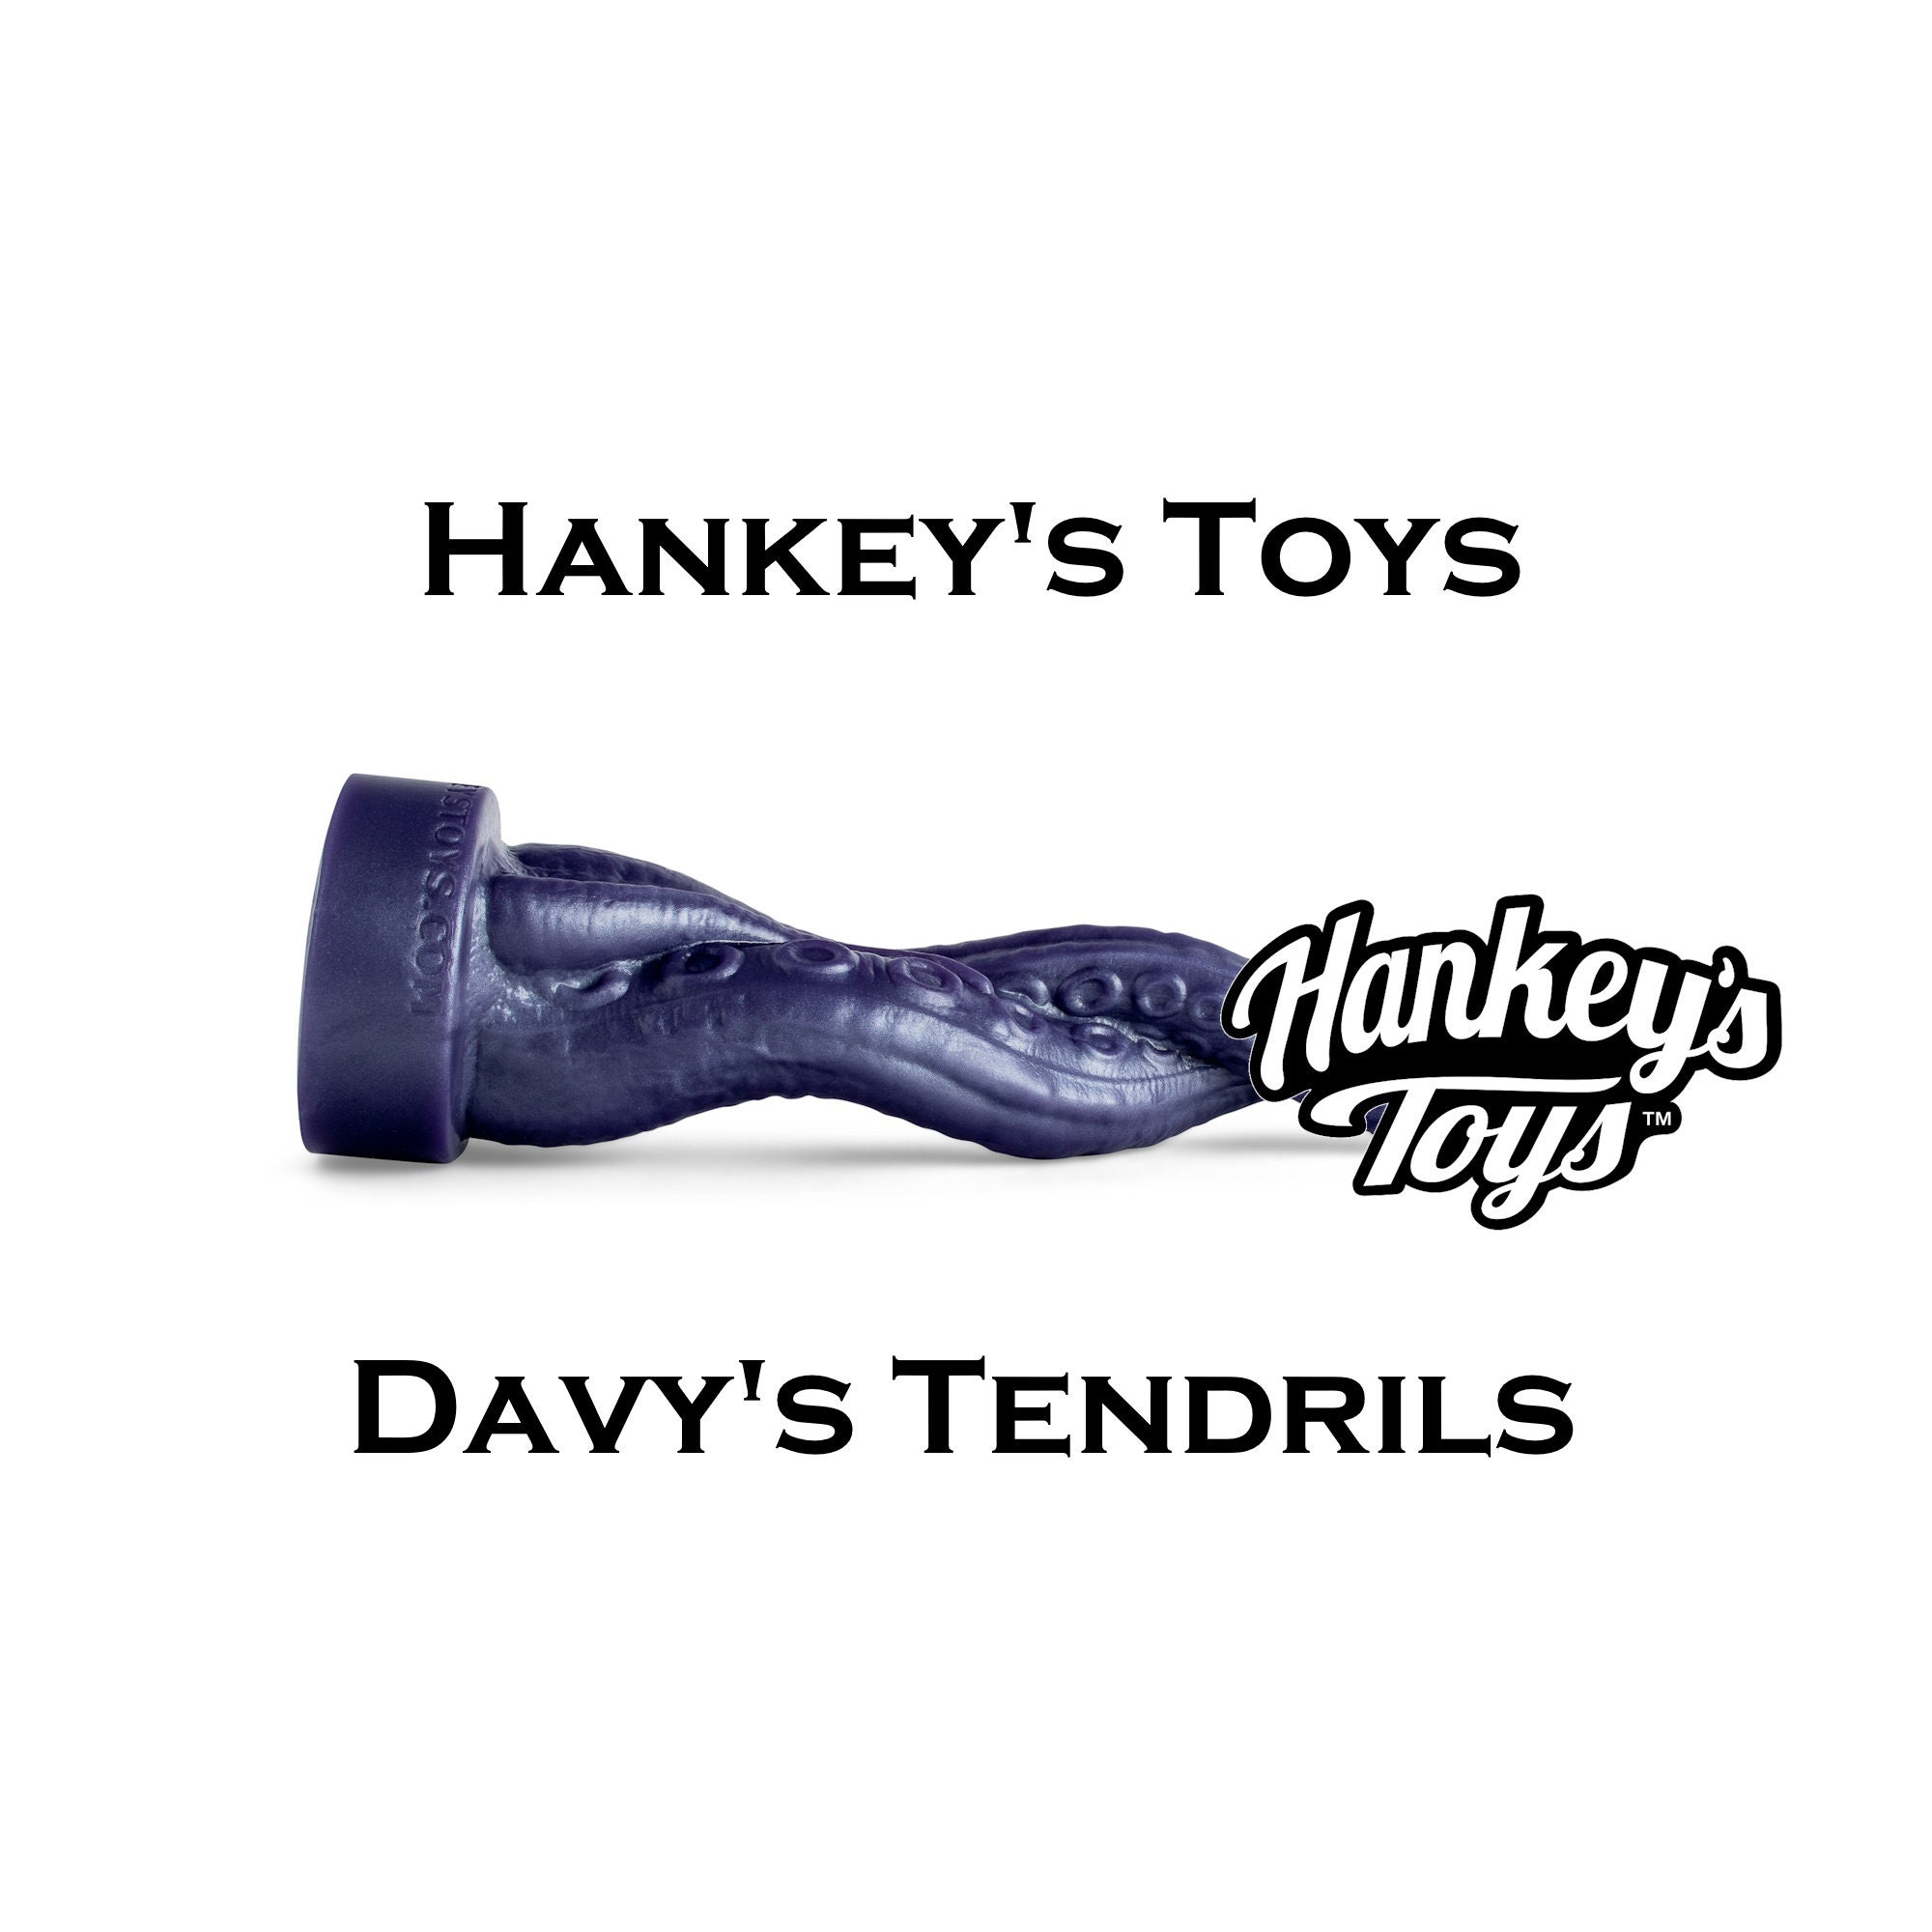 Hankeys toy